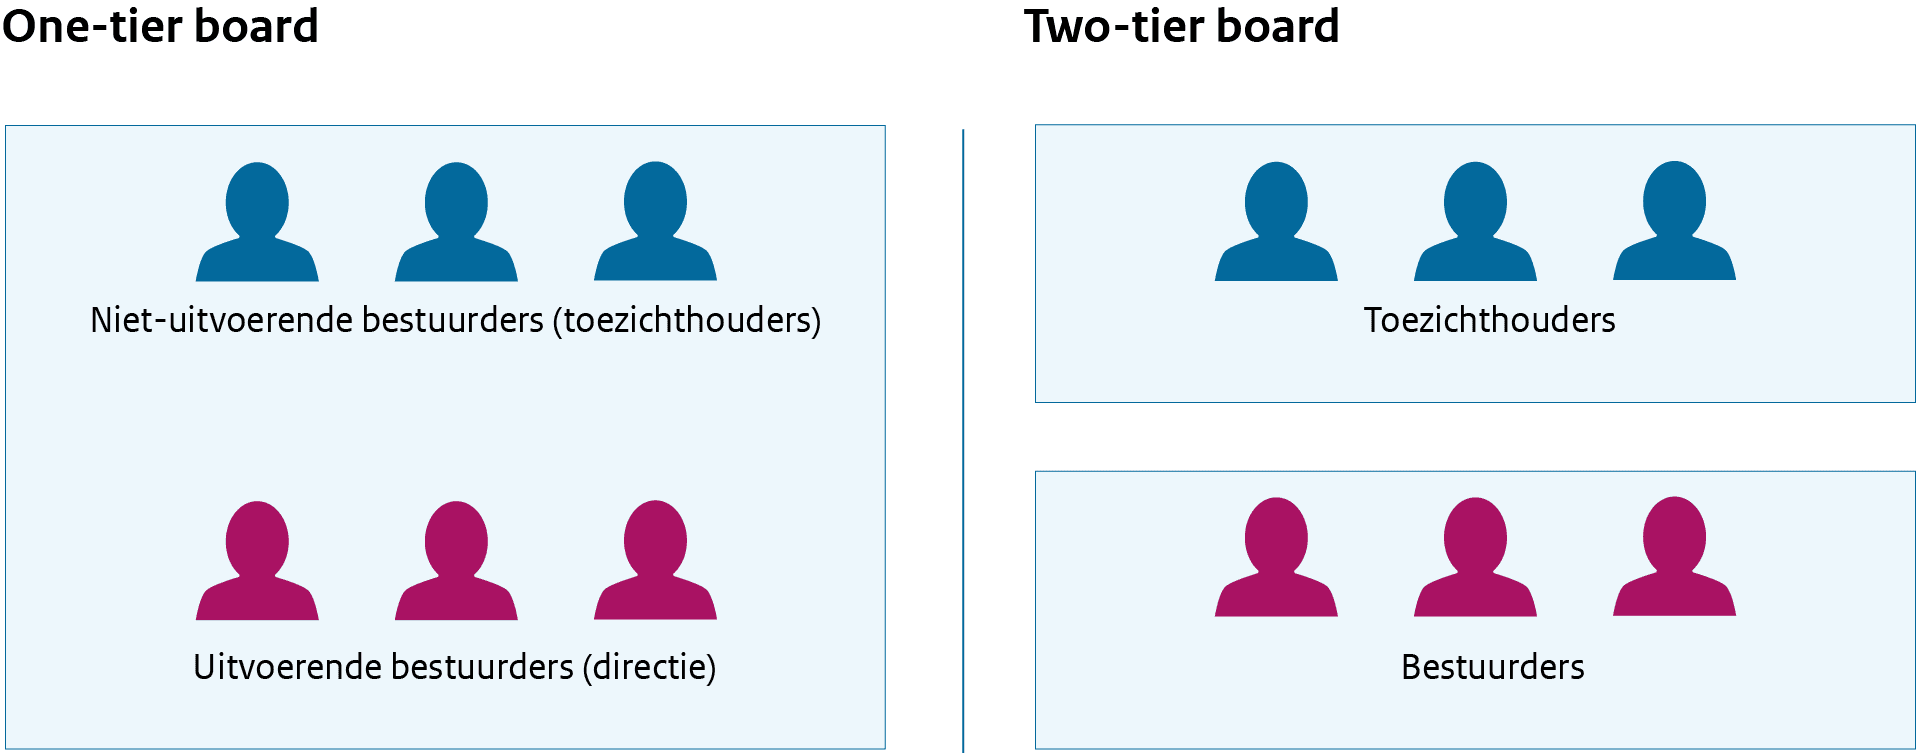 Bij een one-tier board vormen de directie en toezichthouders één bestuur. Bij een two-tier board is er een scheiding tussen de bestuurders en toezichthouders.